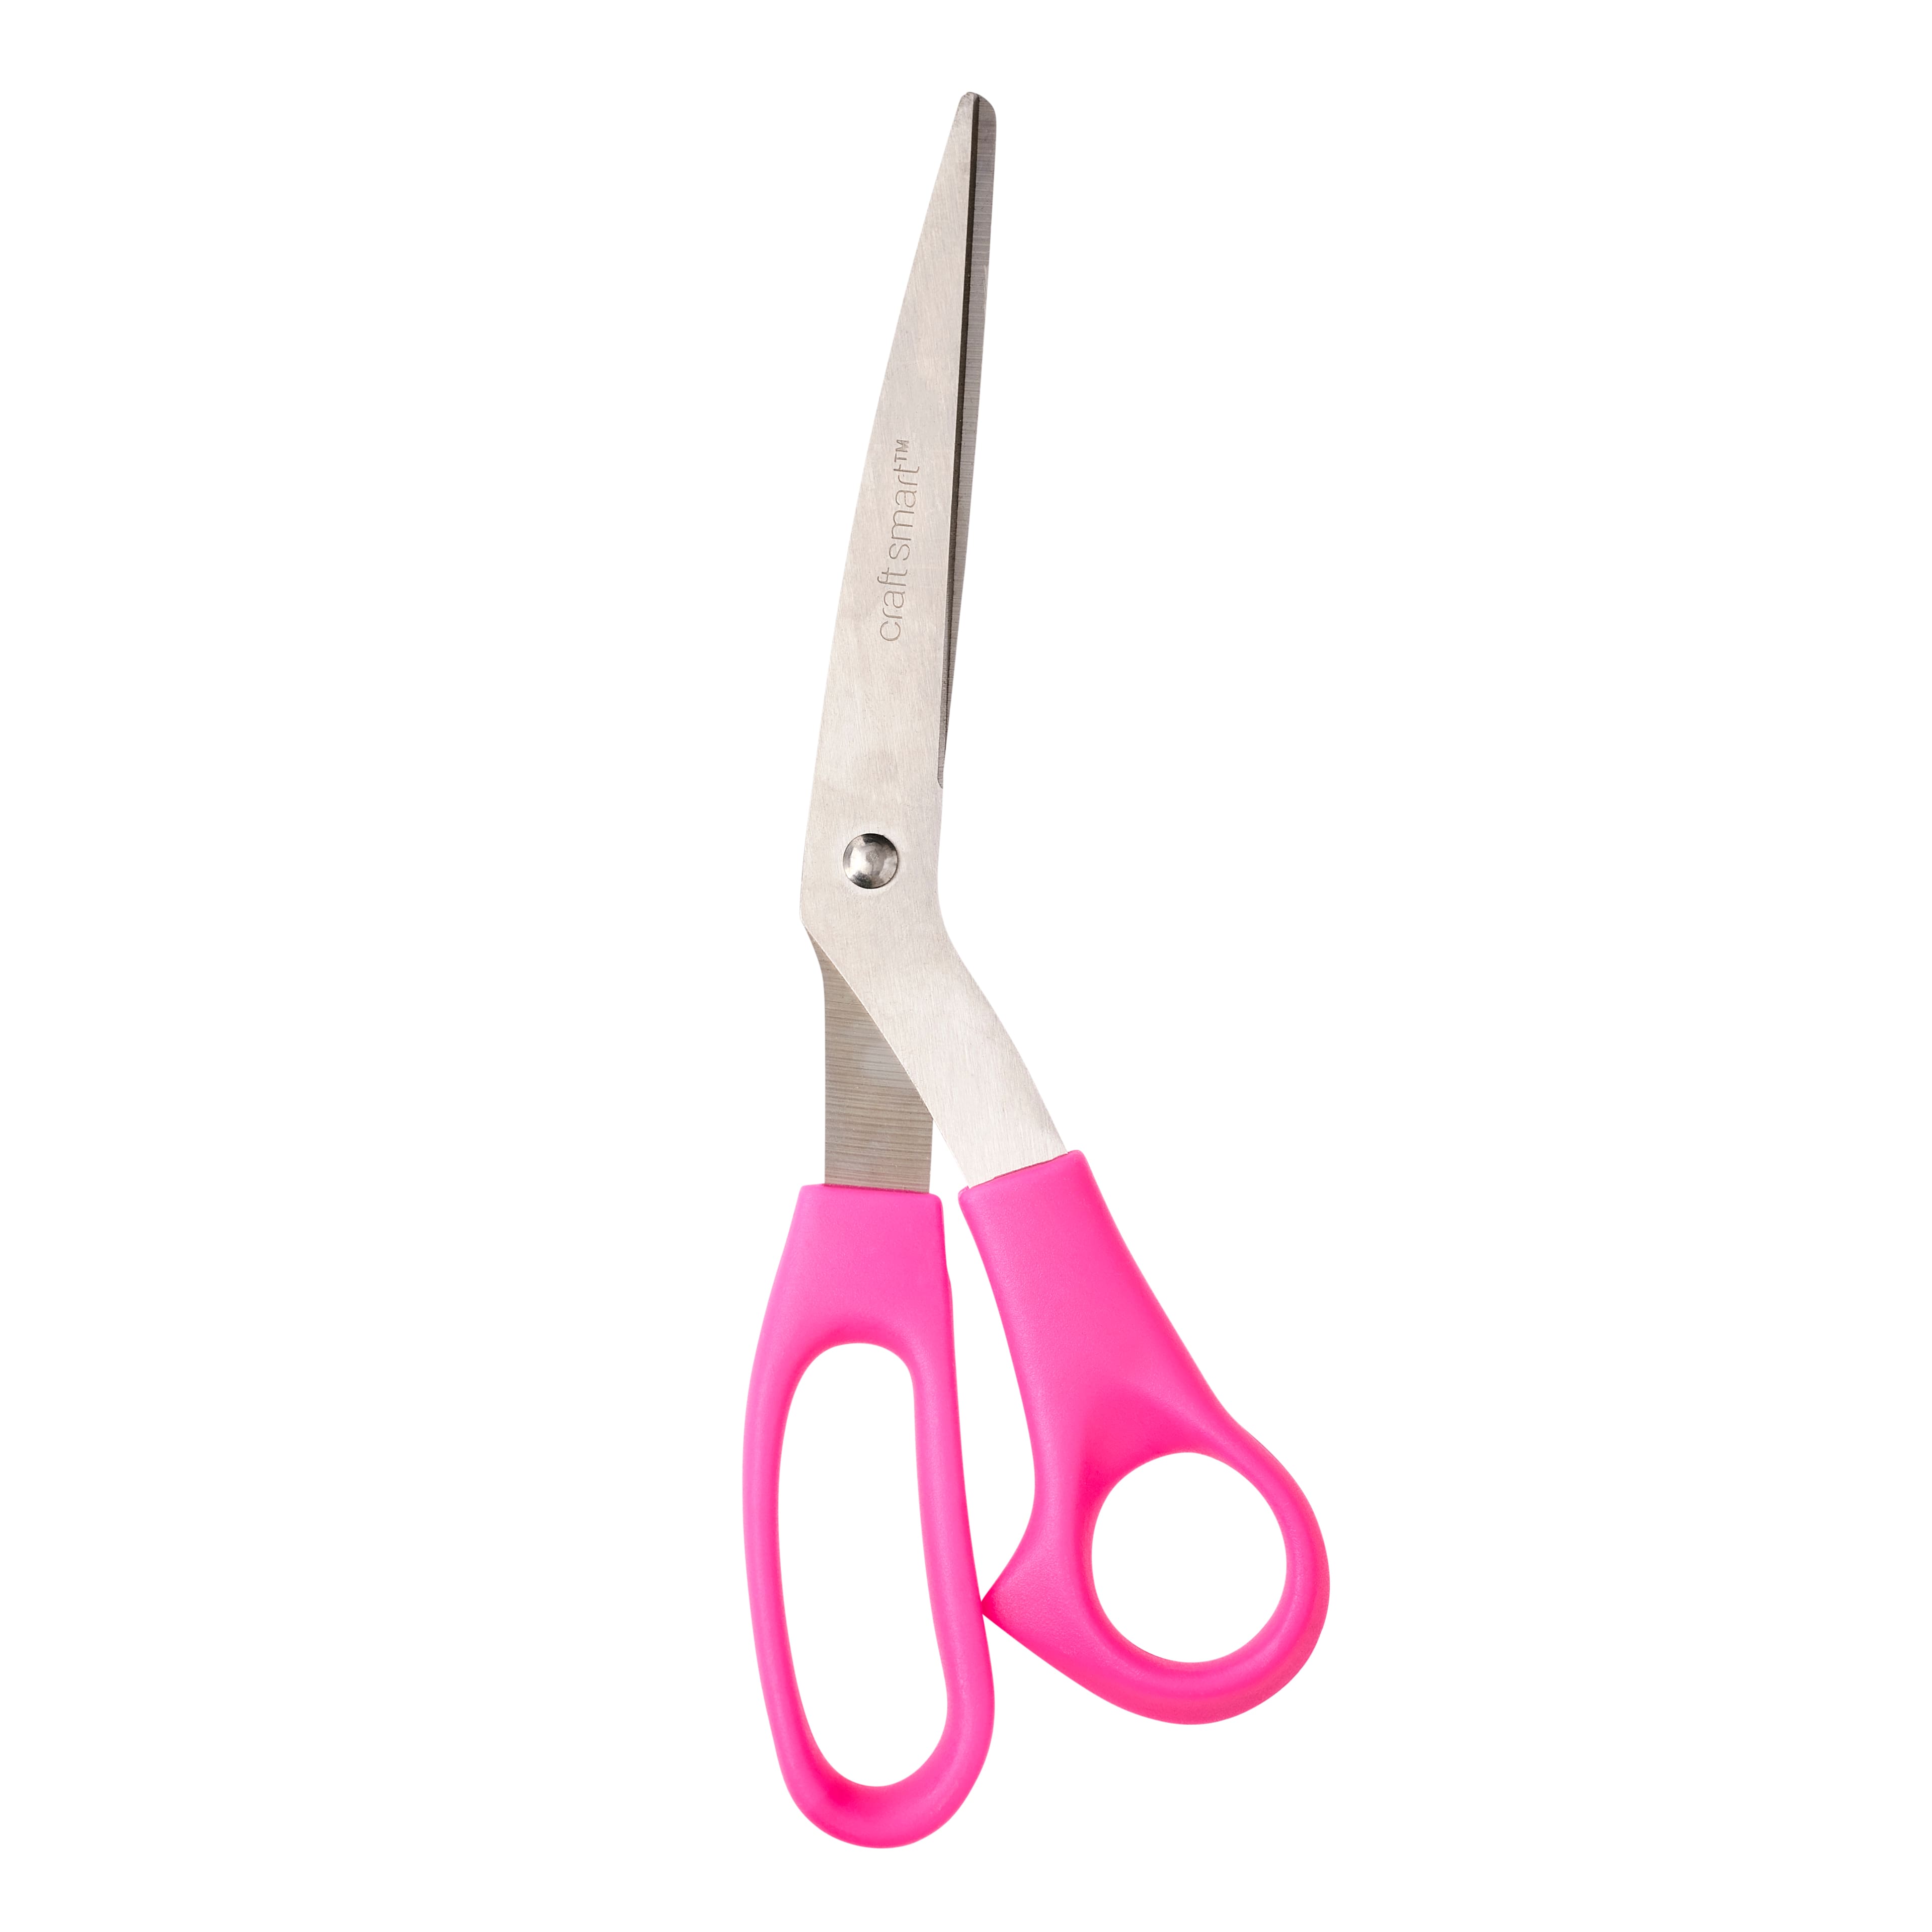 Assorted Bent Scissors By Craft Smart&#xAE;